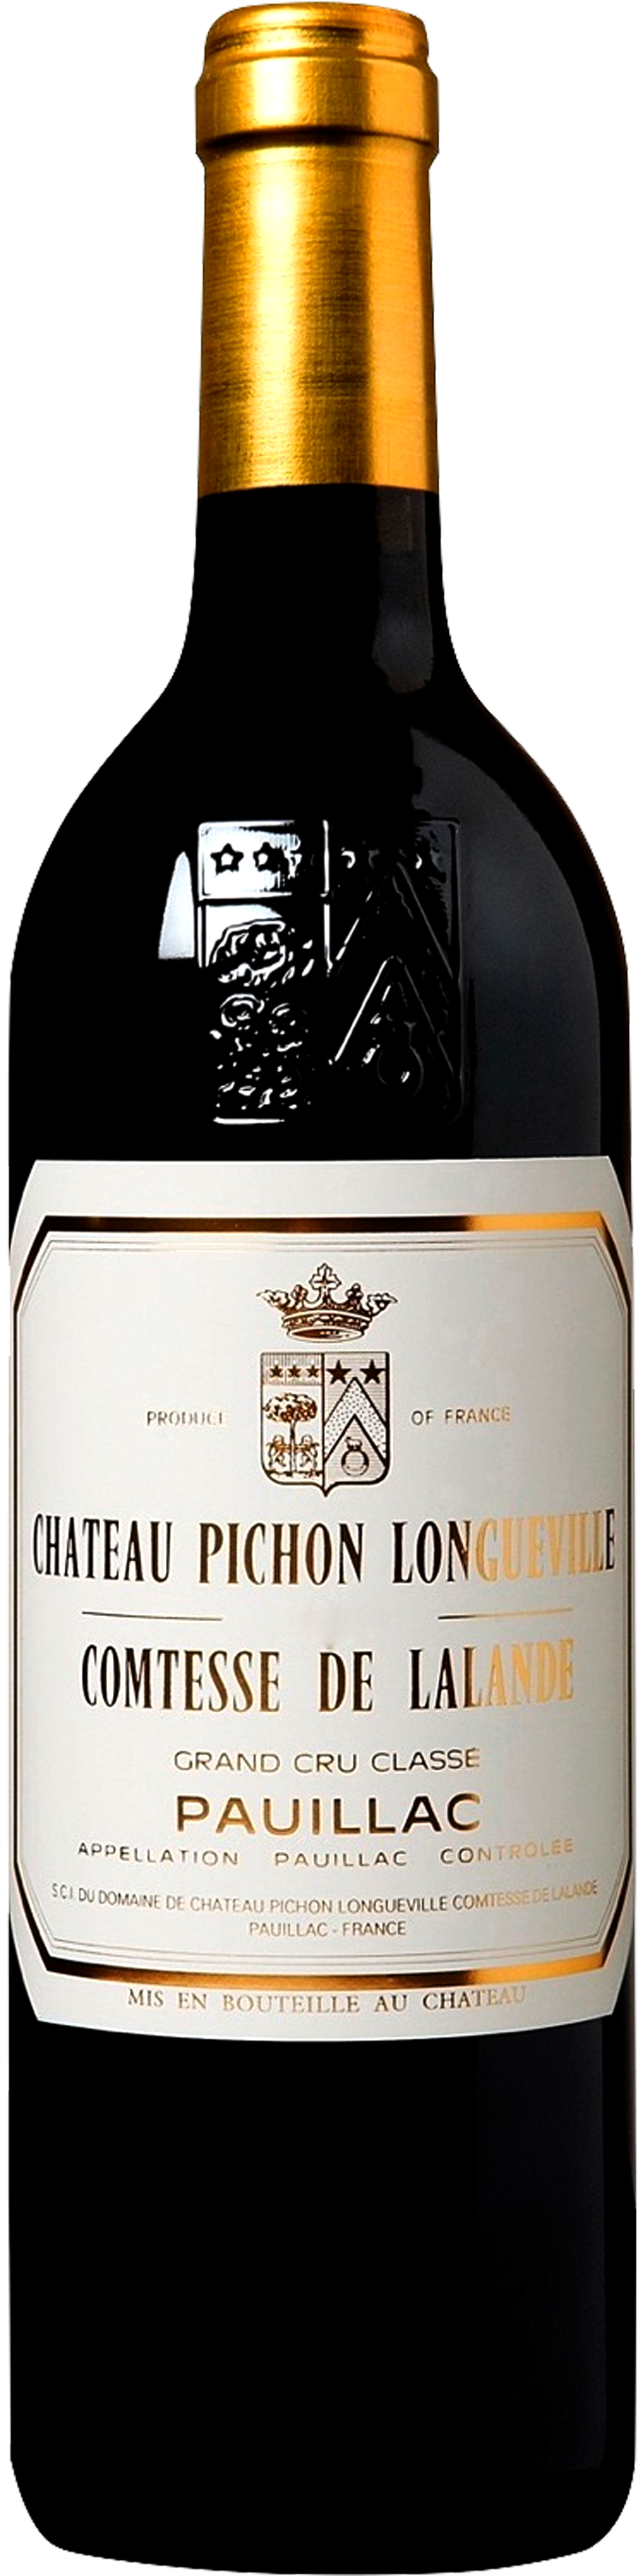 Image of product Pichon Longueville Lalande, 2ème Cru Pauillac